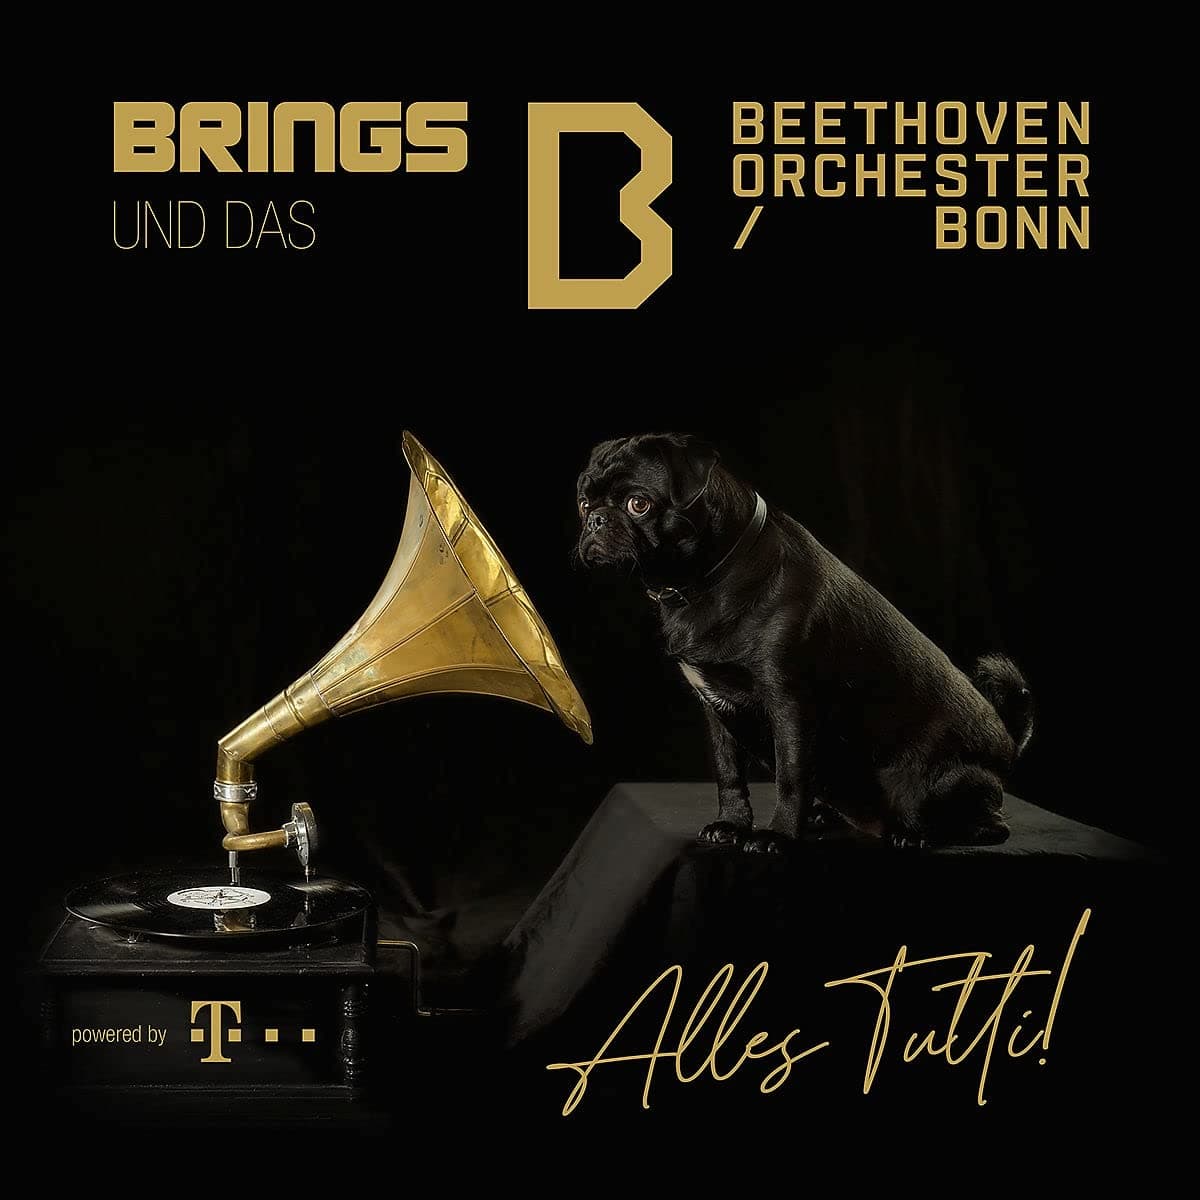 Brings - Alles Tutti! 2021 mit dem Beethoven-Orchester Bonn